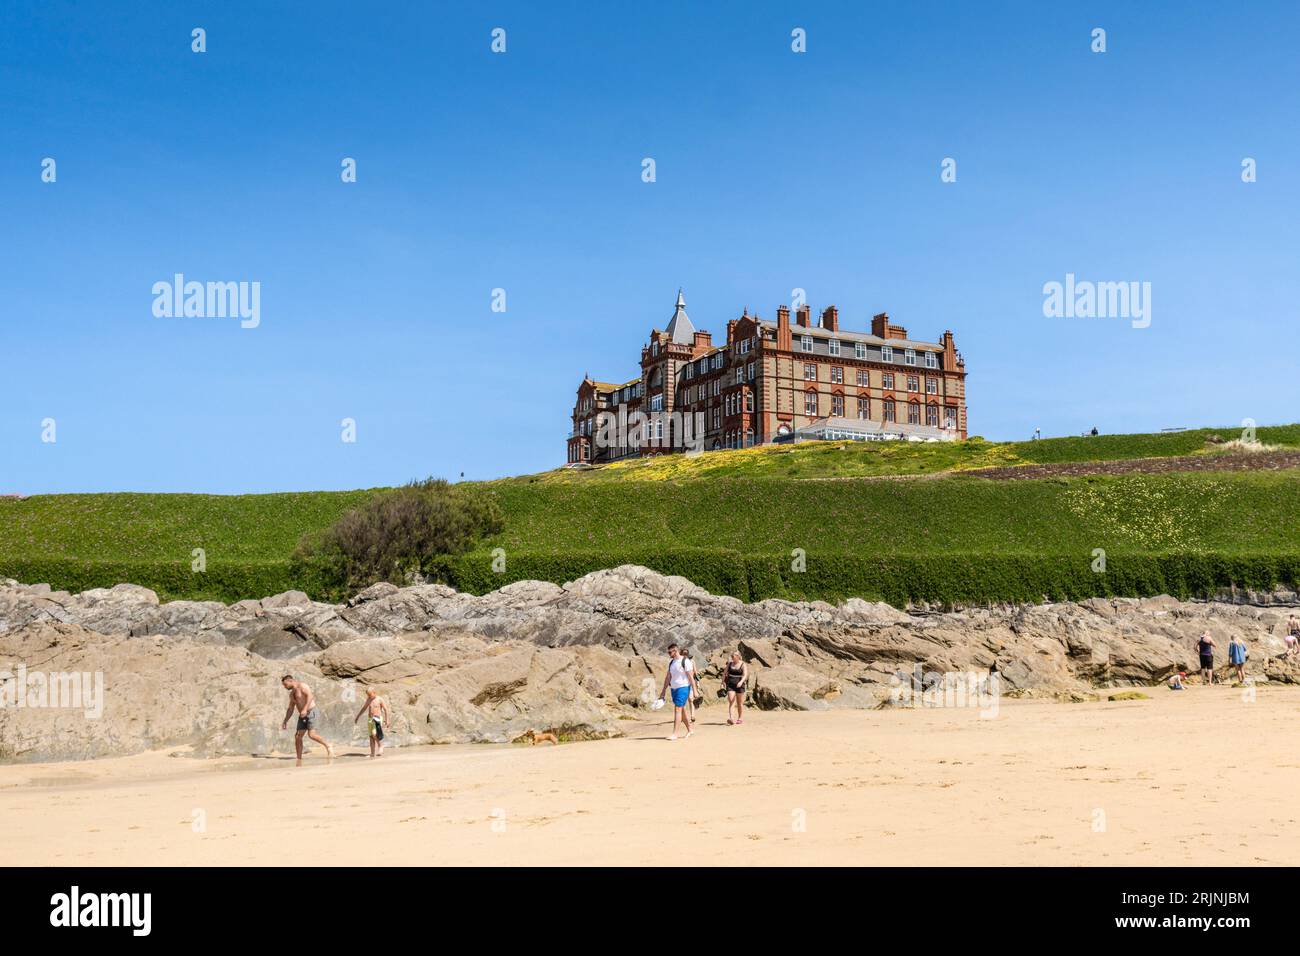 L'imposant hôtel historique de la Pointe surplombant la plage de Fistral à Newquay, en Cornouailles, au Royaume-Uni. Banque D'Images